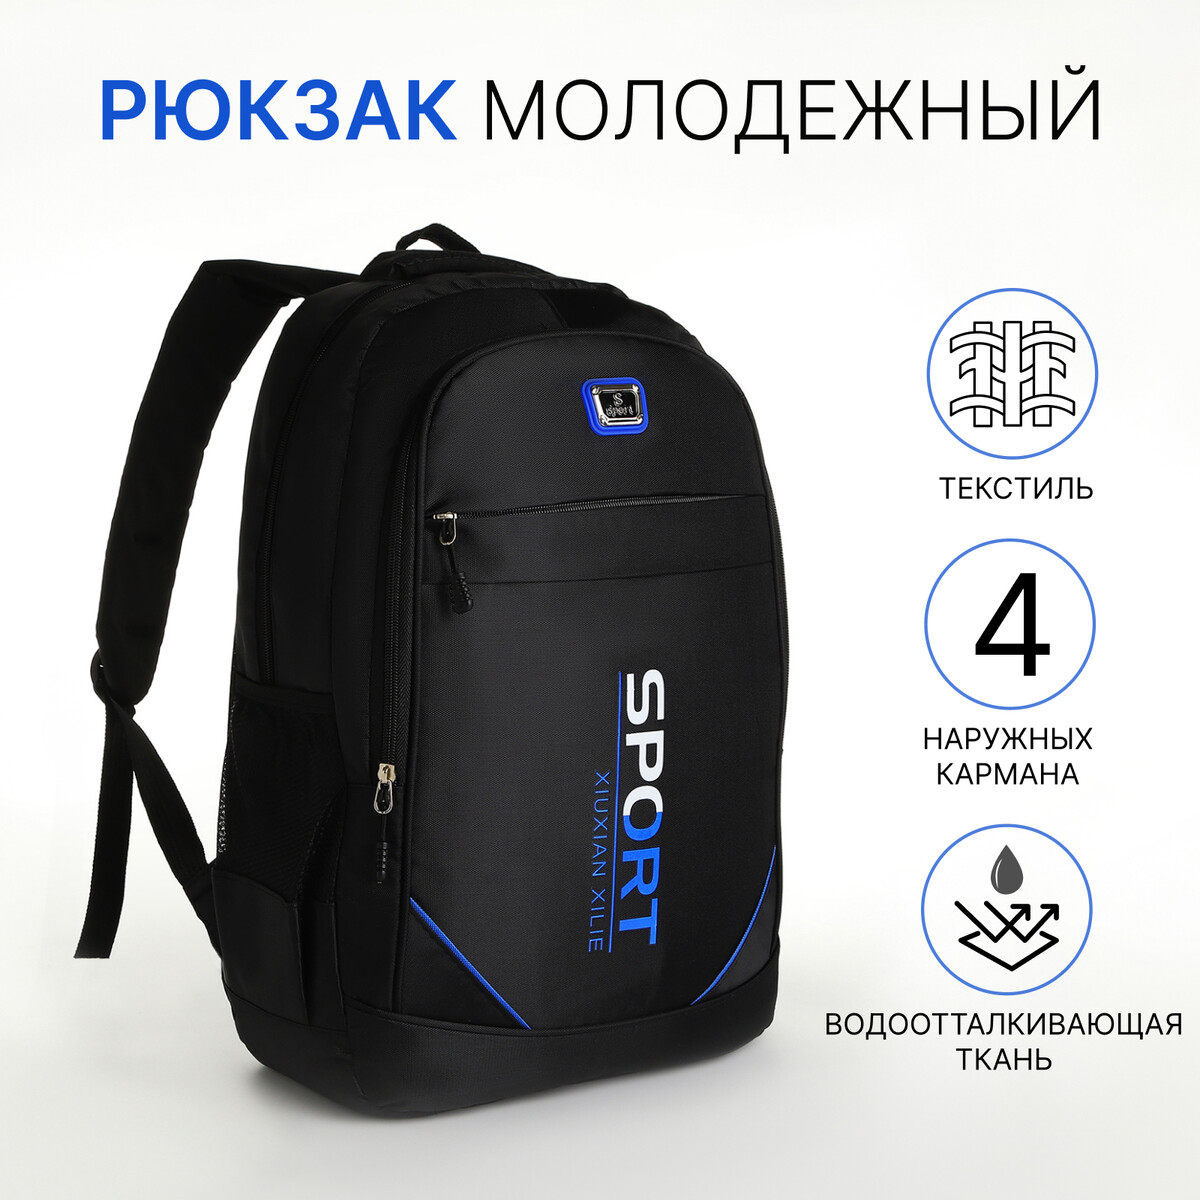 Рюкзак молодежный из текстиля на молнии, 4 кармана, цвет черный/синий рюкзак молодежный из текстиля на молнии 3 кармана сумка держатель для чемодана синий